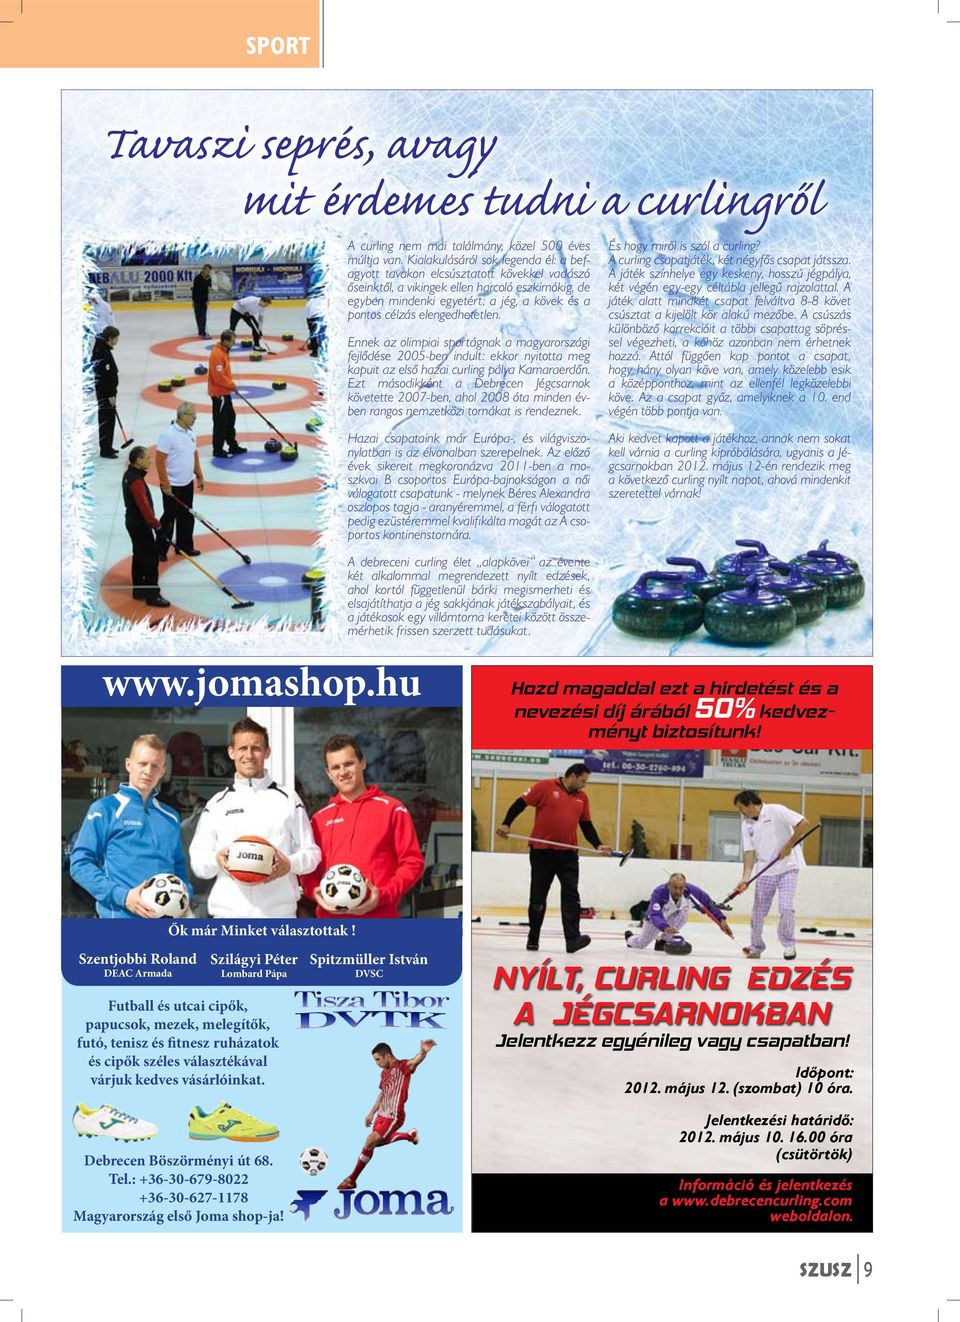 elengedhetetlen. Ennek az olimpiai sportágnak a magyarországi fejlődése 2005-ben indult: ekkor nyitotta meg kapuit az első hazai curling pálya Kamaraerdőn.